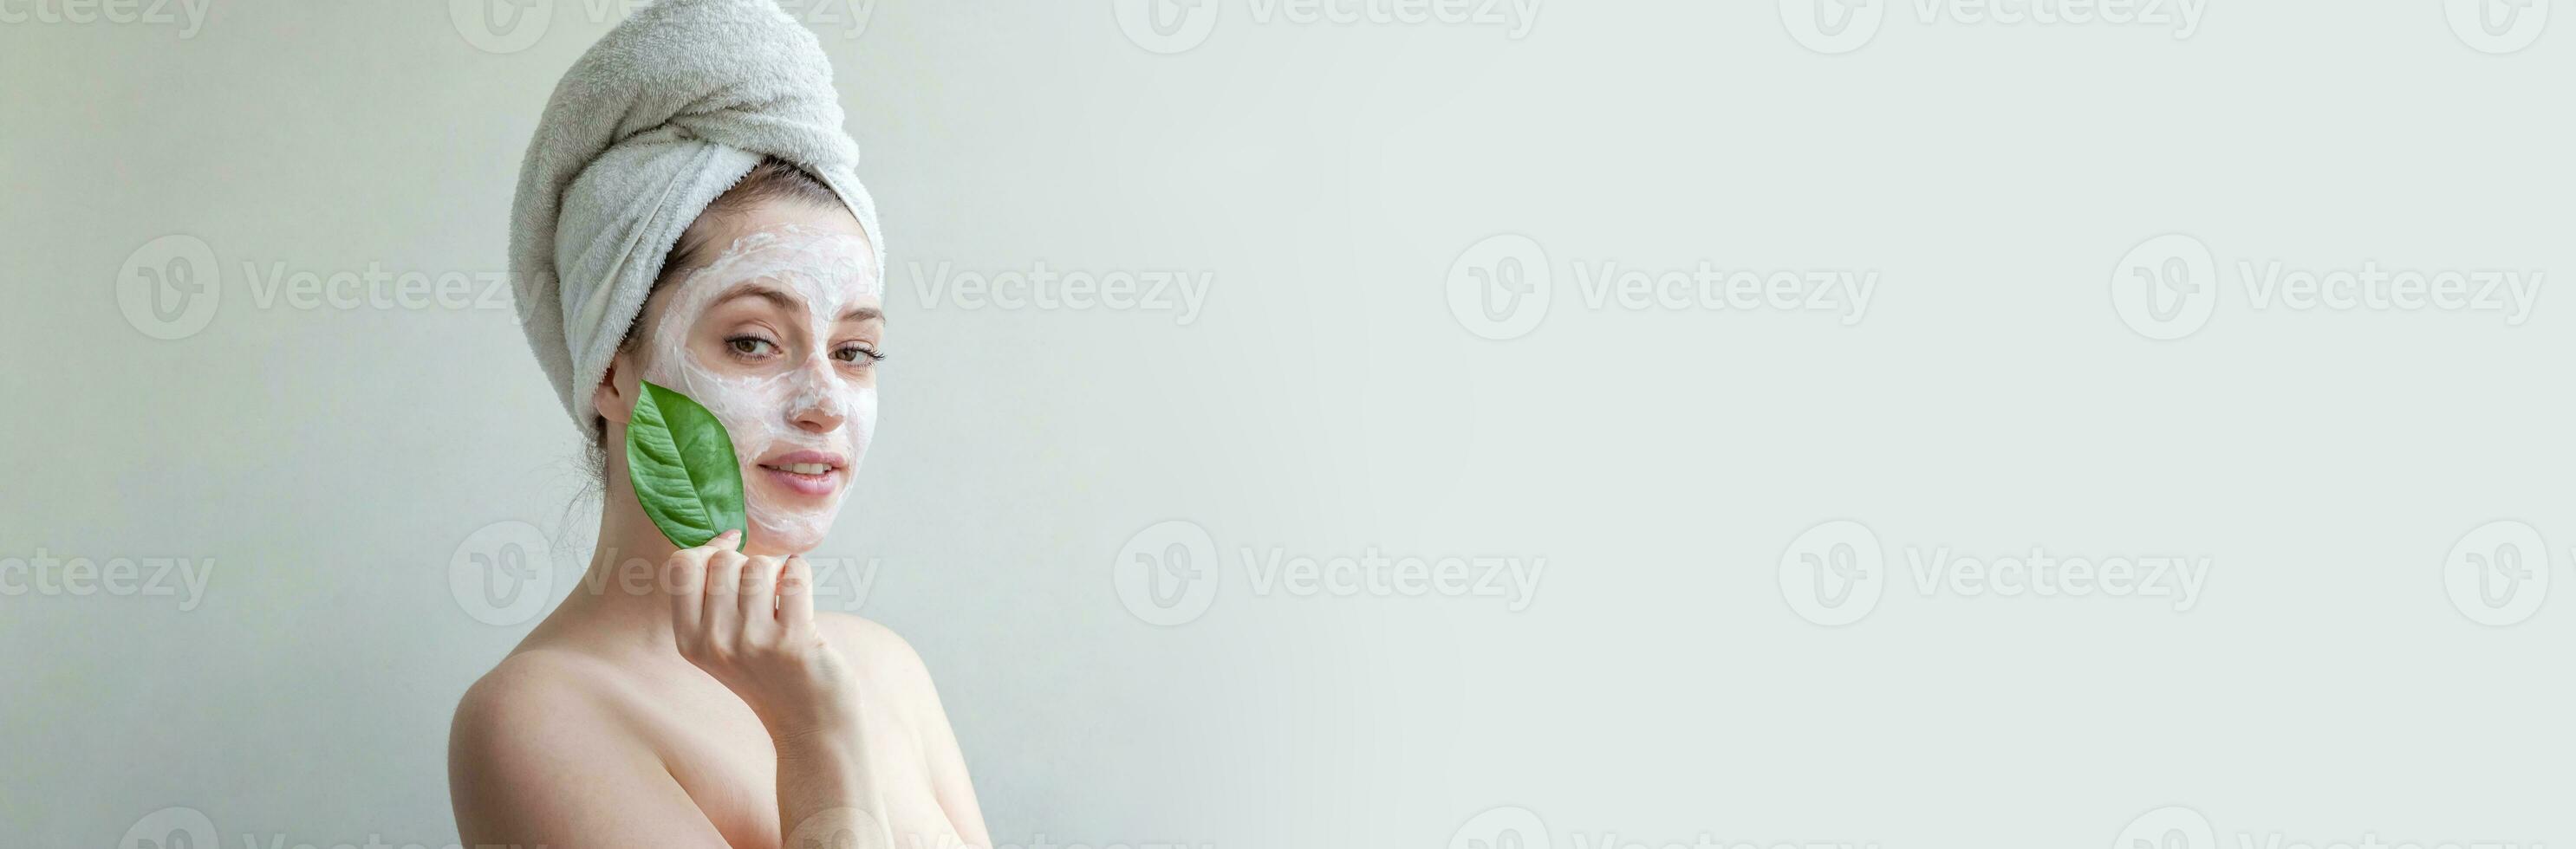 skönhet porträtt av kvinna i handduk på huvud med vit närande mask eller creme på ansikte och grön blad i hand, vit bakgrund isolerat. hudvård rensning eco organisk kosmetisk spa begrepp. foto